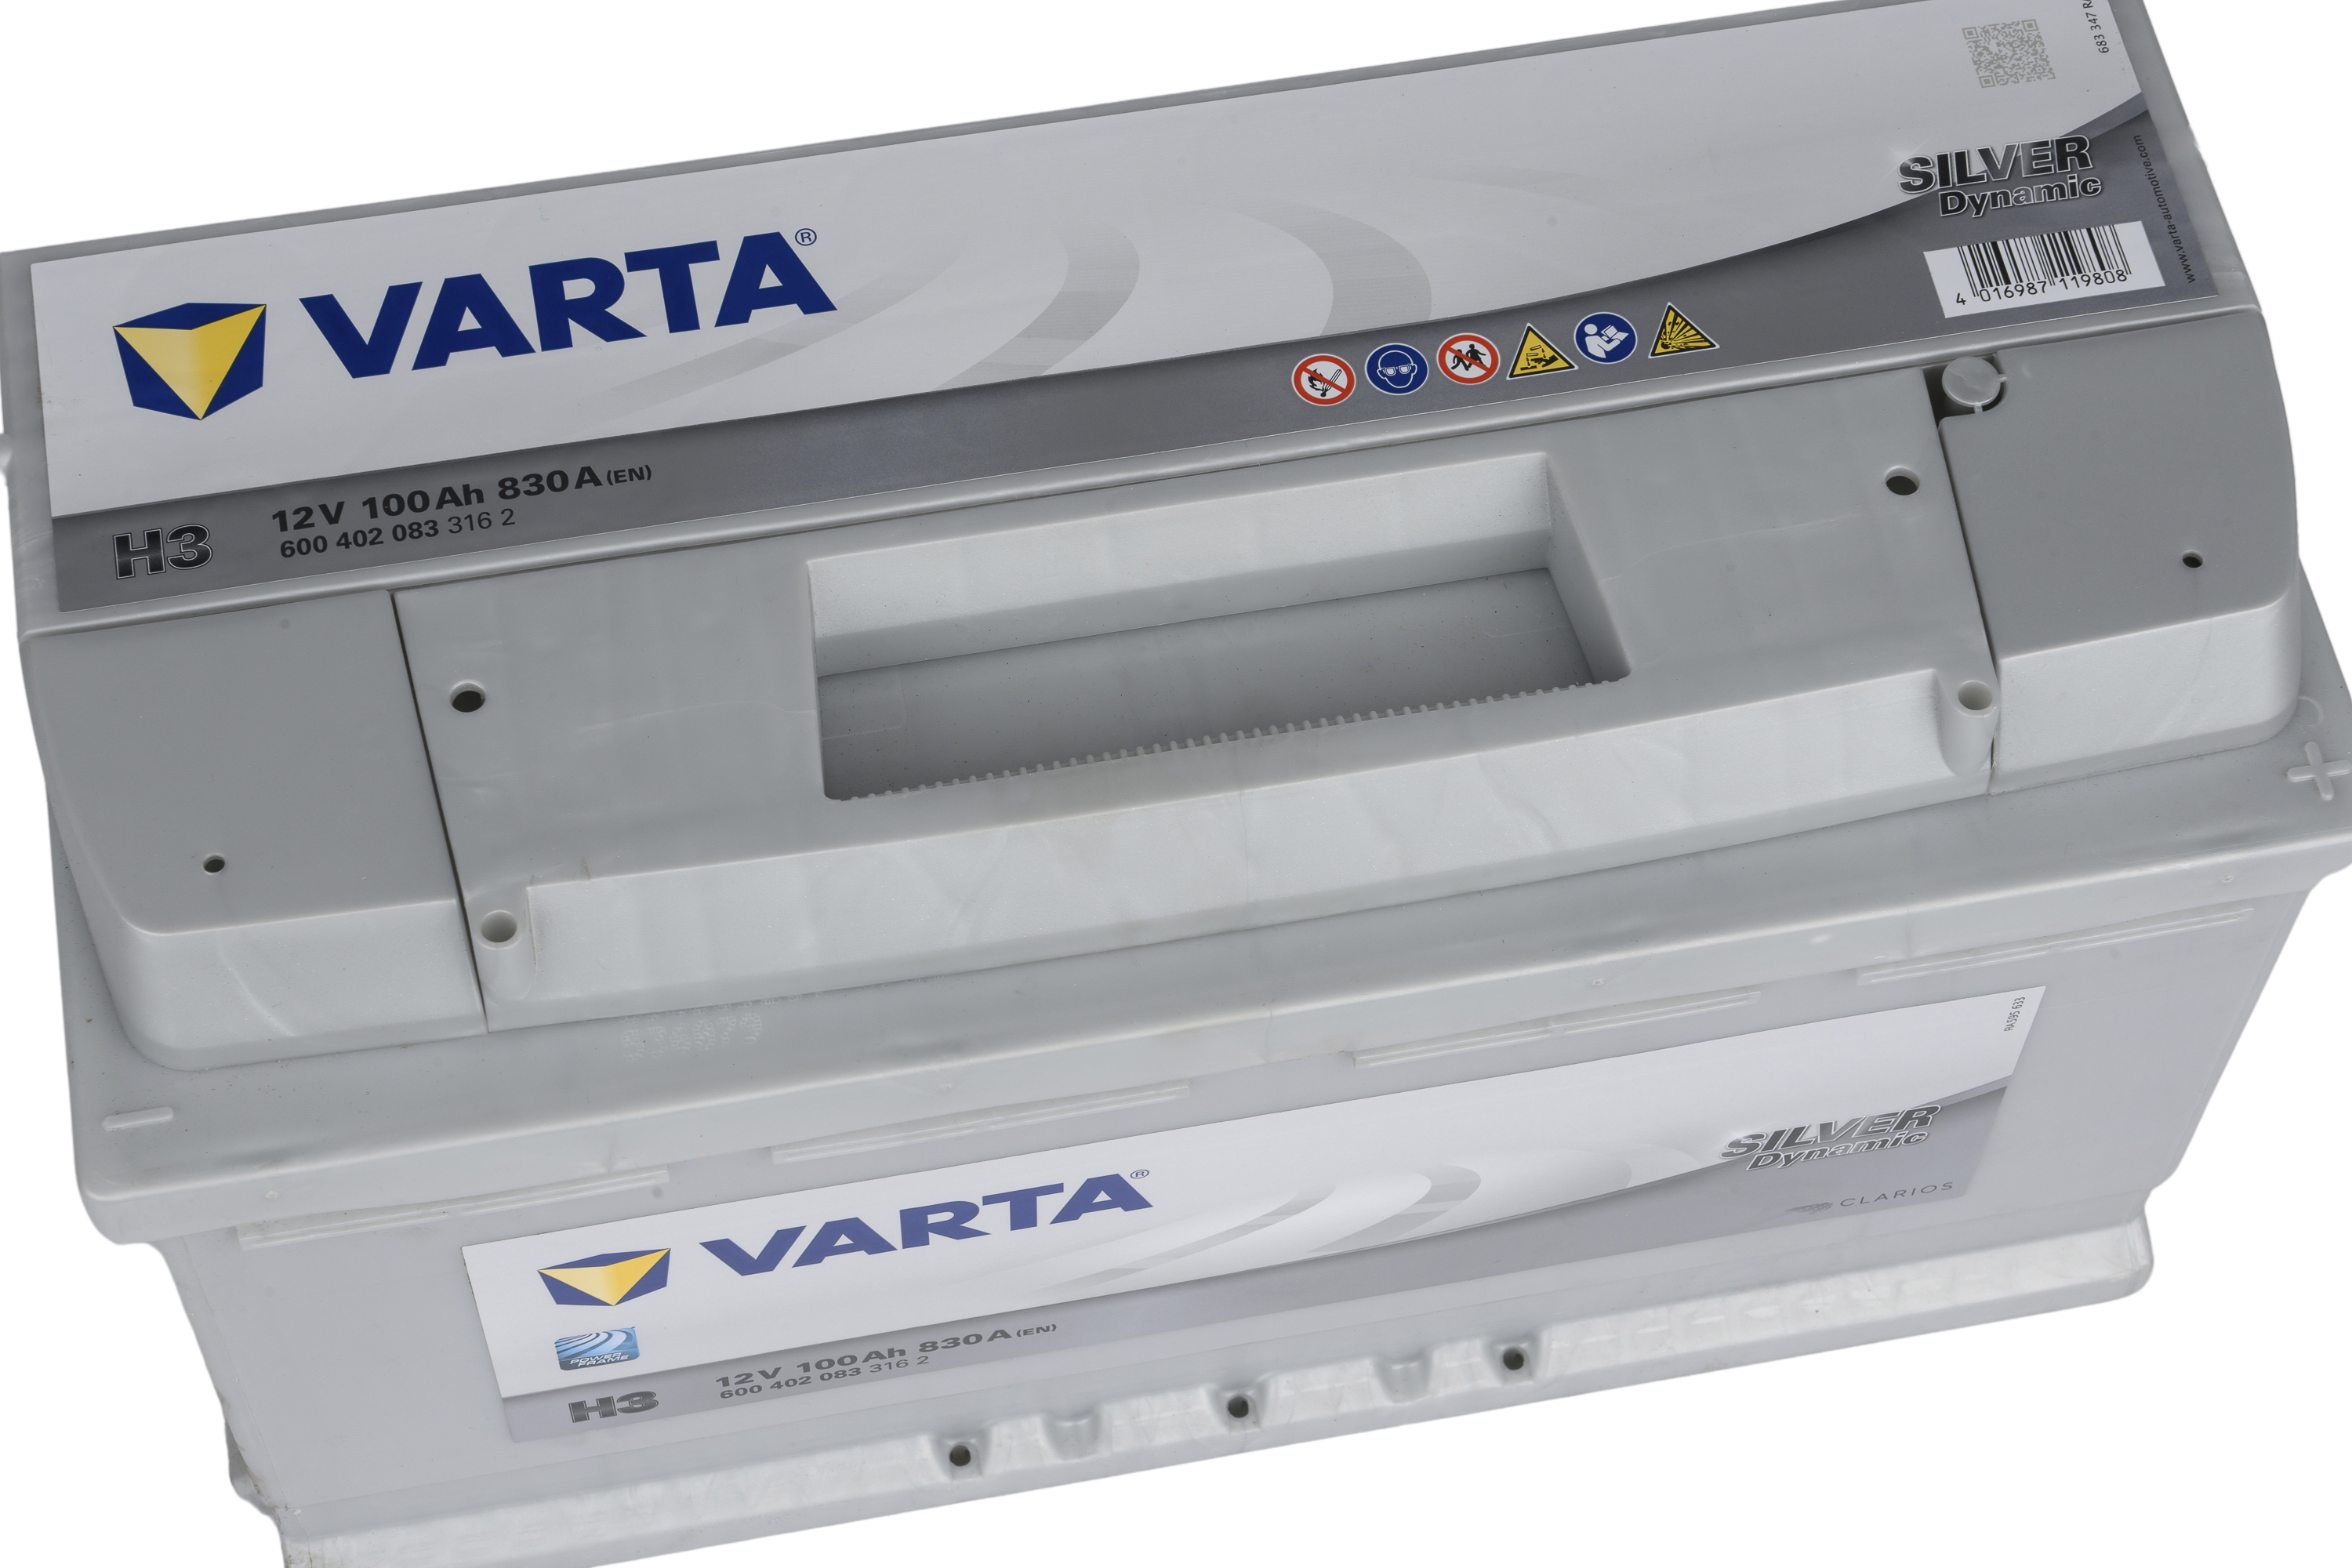 VARTA Accu Silver Dynamic H3  - 12V 100Ah - 600.402.083